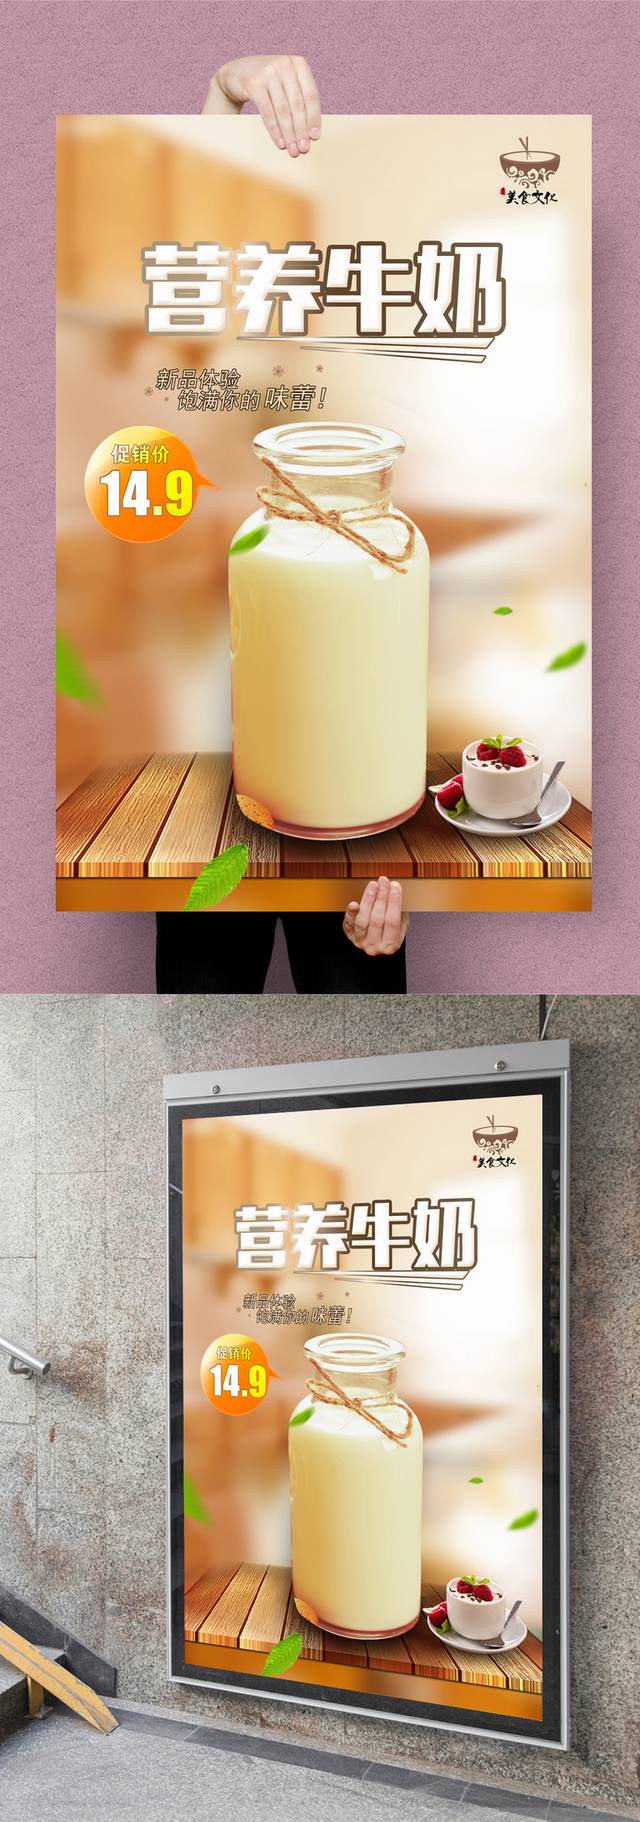 牛奶宣传海报设计高清